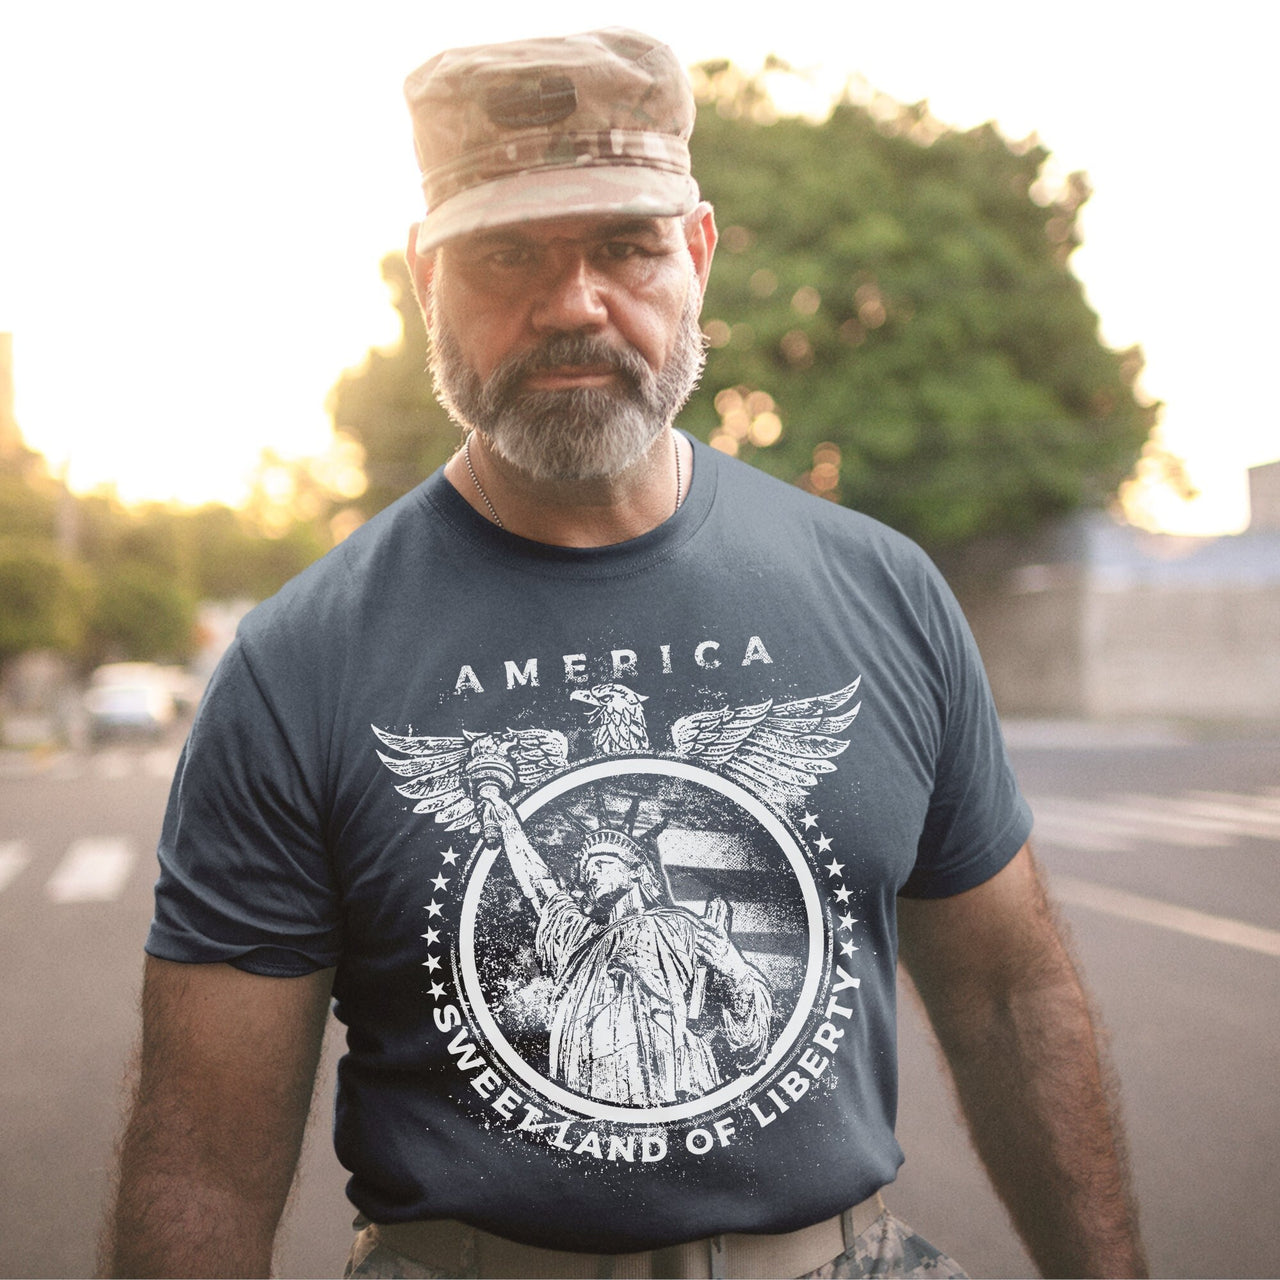 America Sweet Land of Liberty Shirts